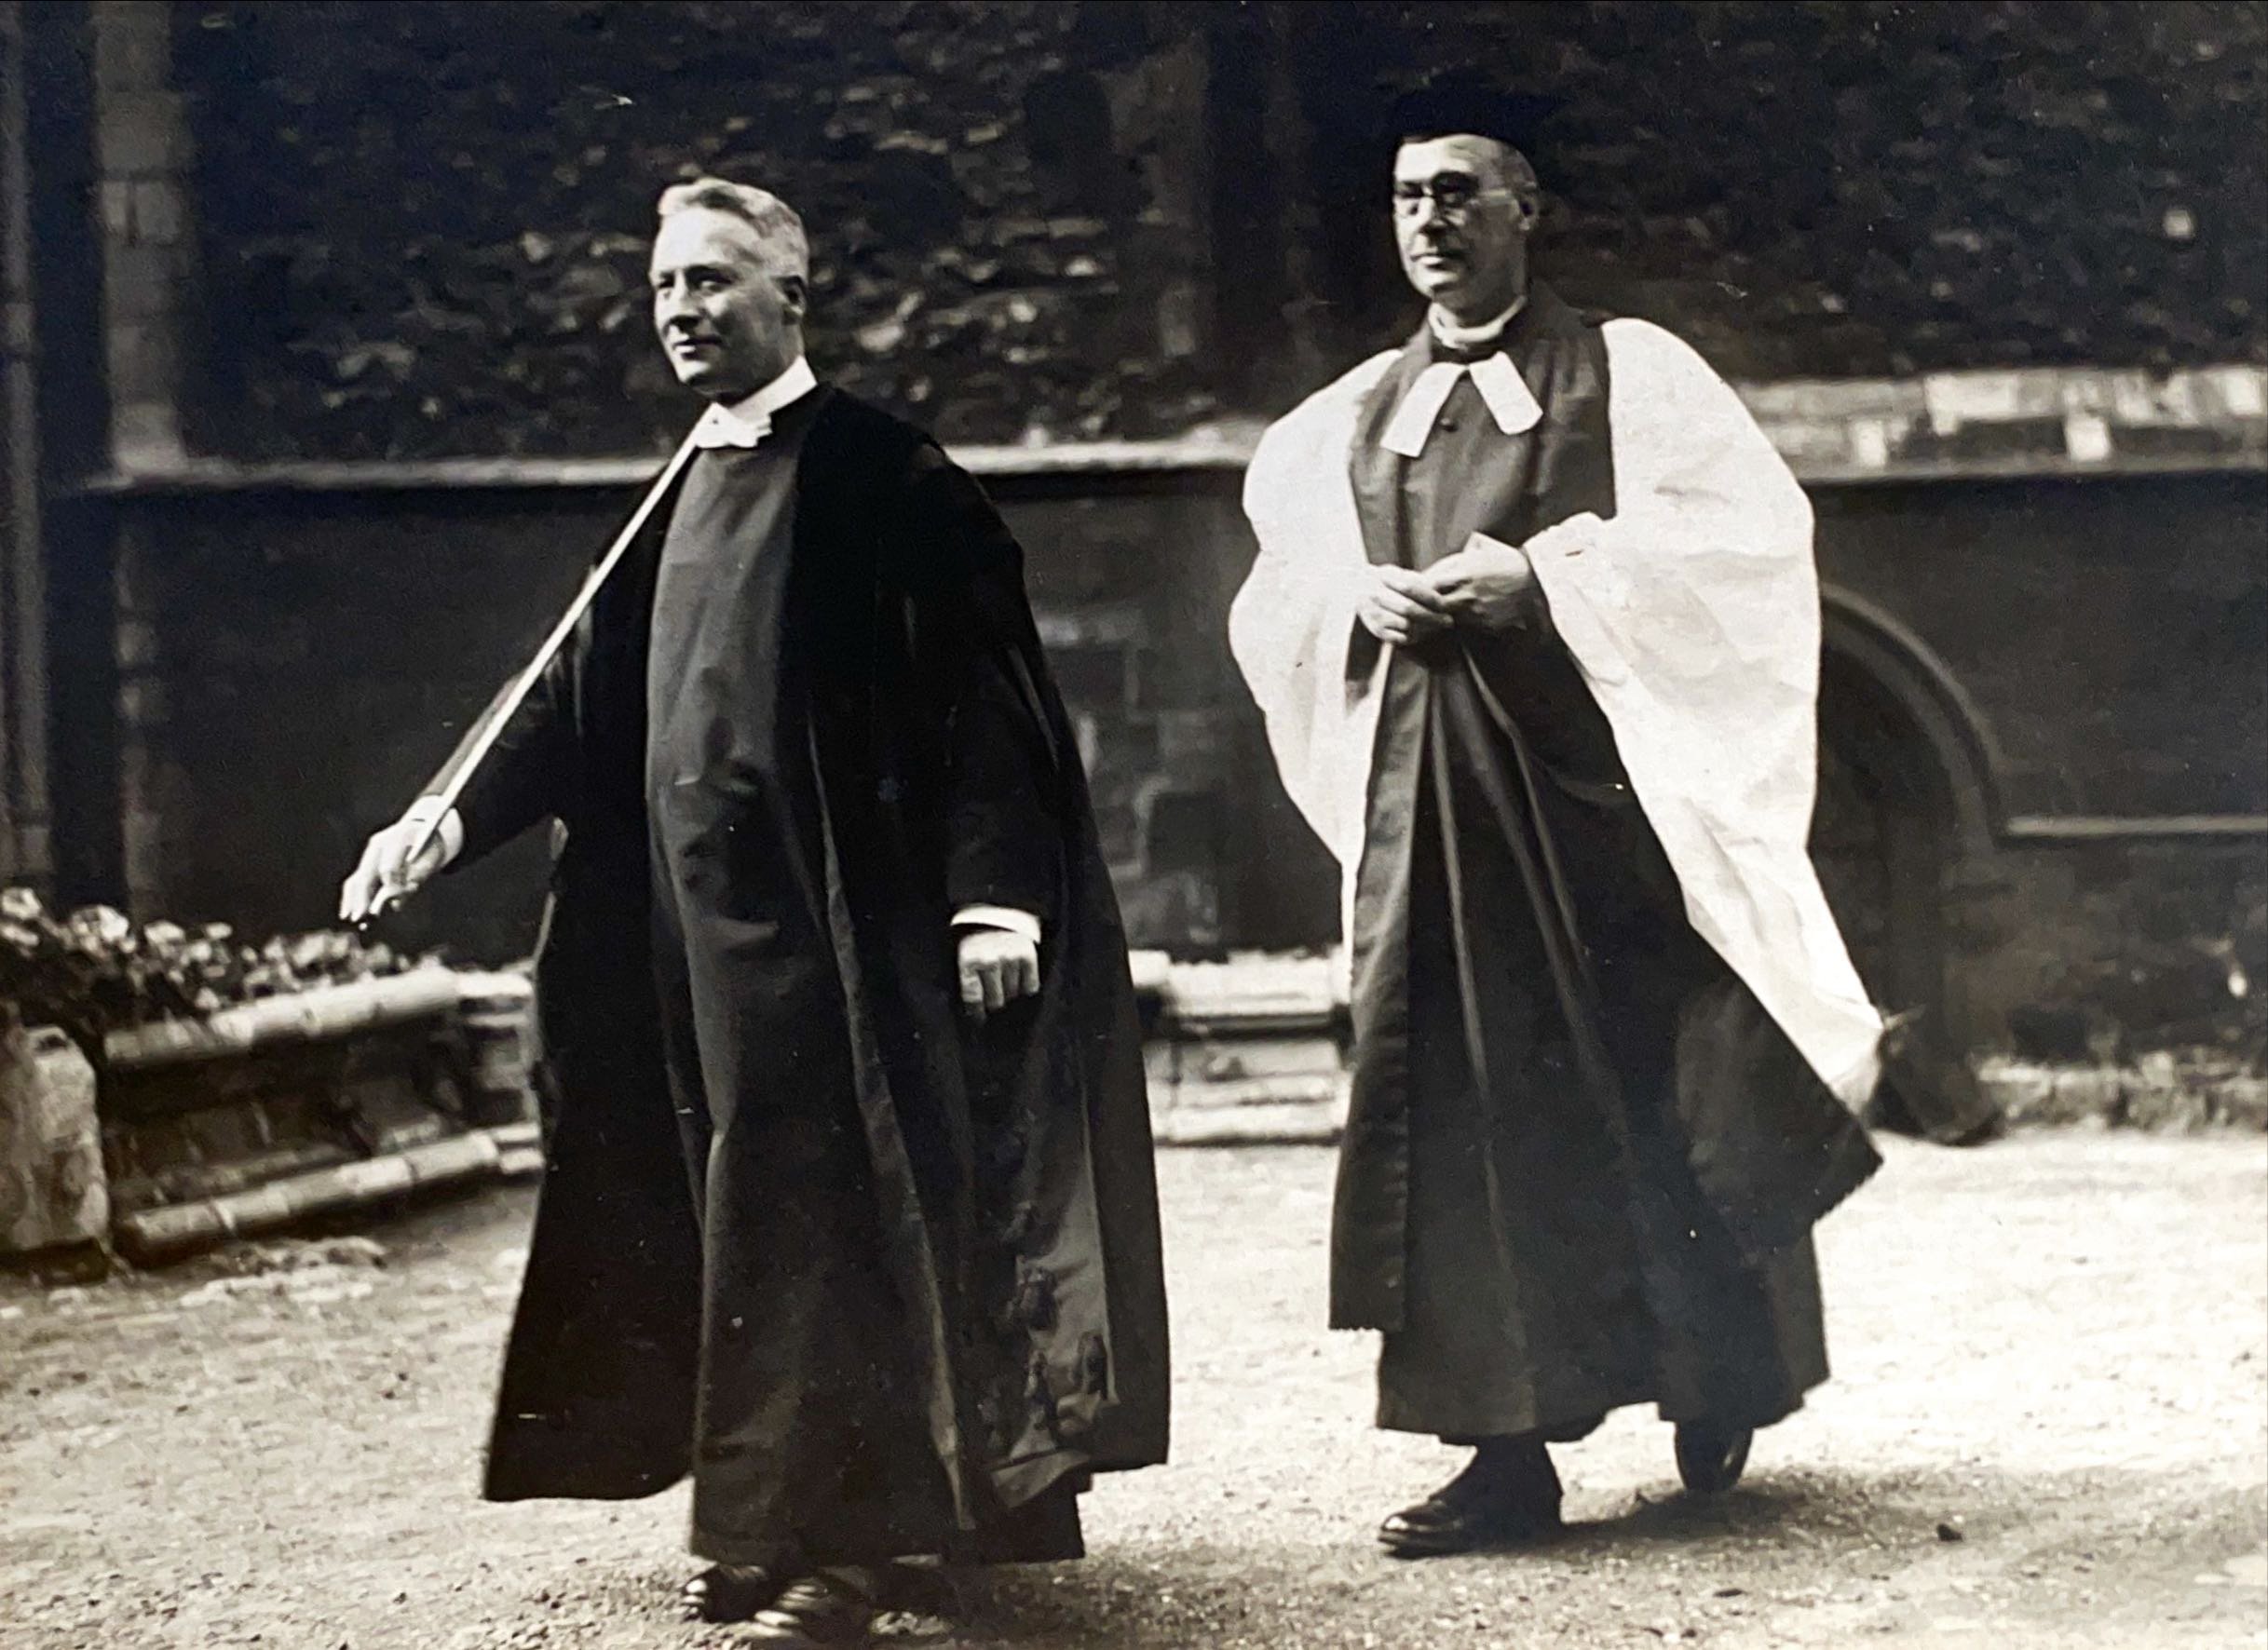 Verger Levett and Dean Talbot, September 1928